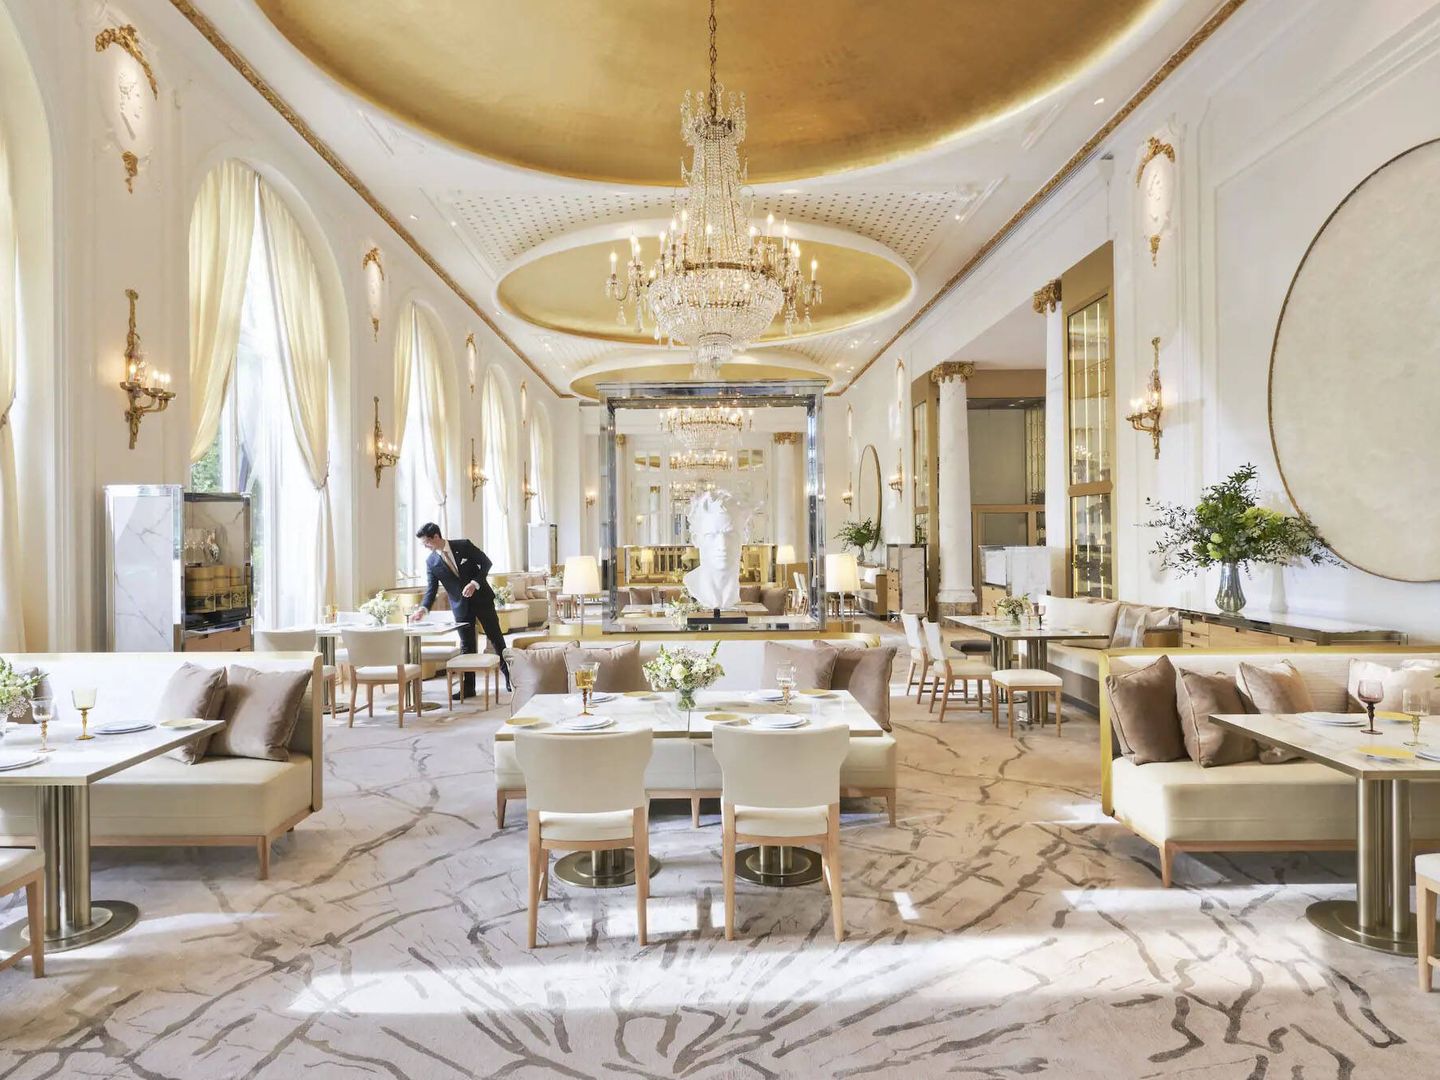 El restaurante Deessa es uno de los cinco espacios gastronómicos que hay en el Hotel Mandarin Oriental Ritz de Madrid. (M.O. Ritz)